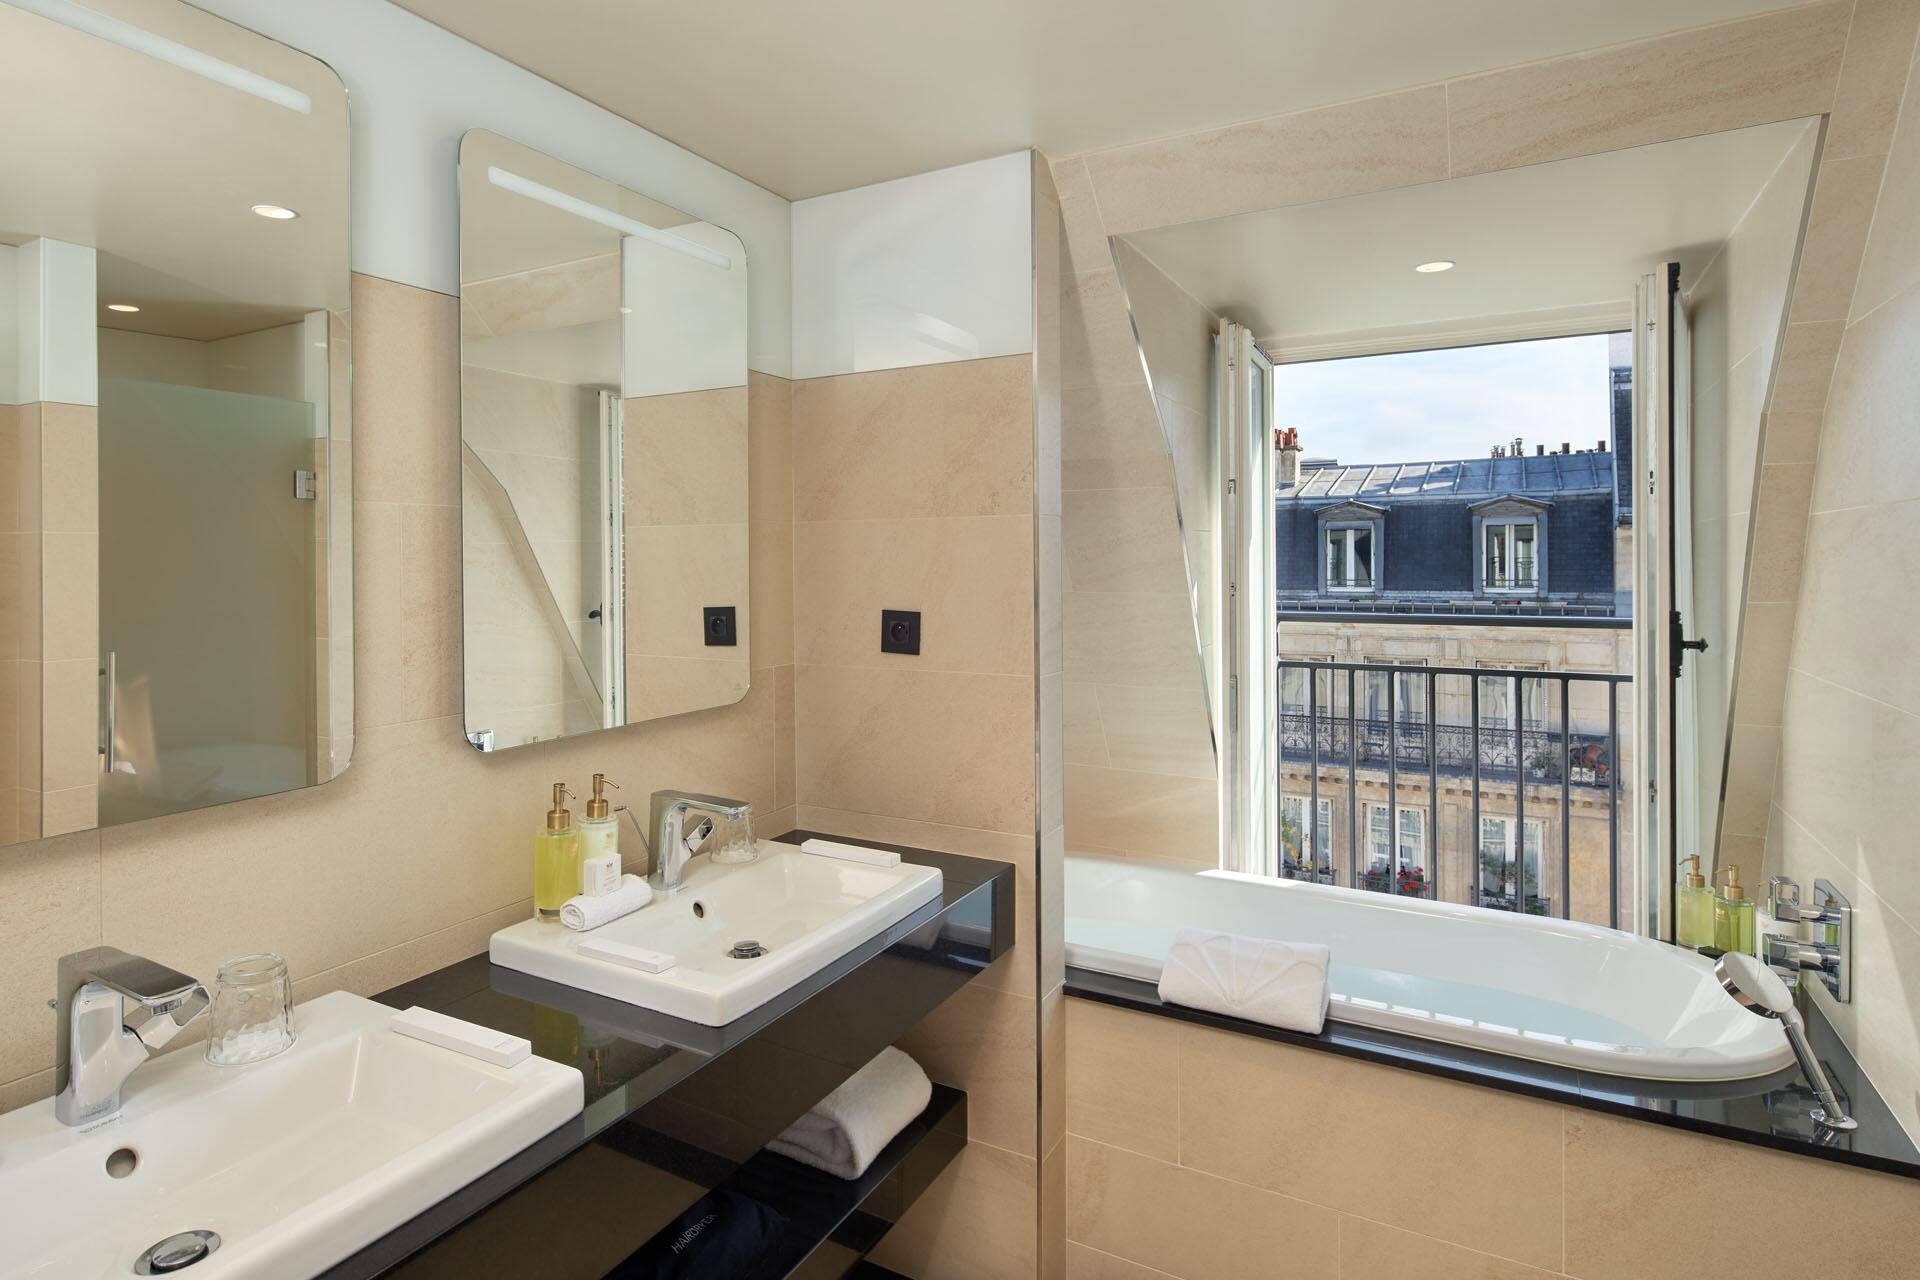 Maison Albar Hotels Le Pont-Neuf Junior Suite